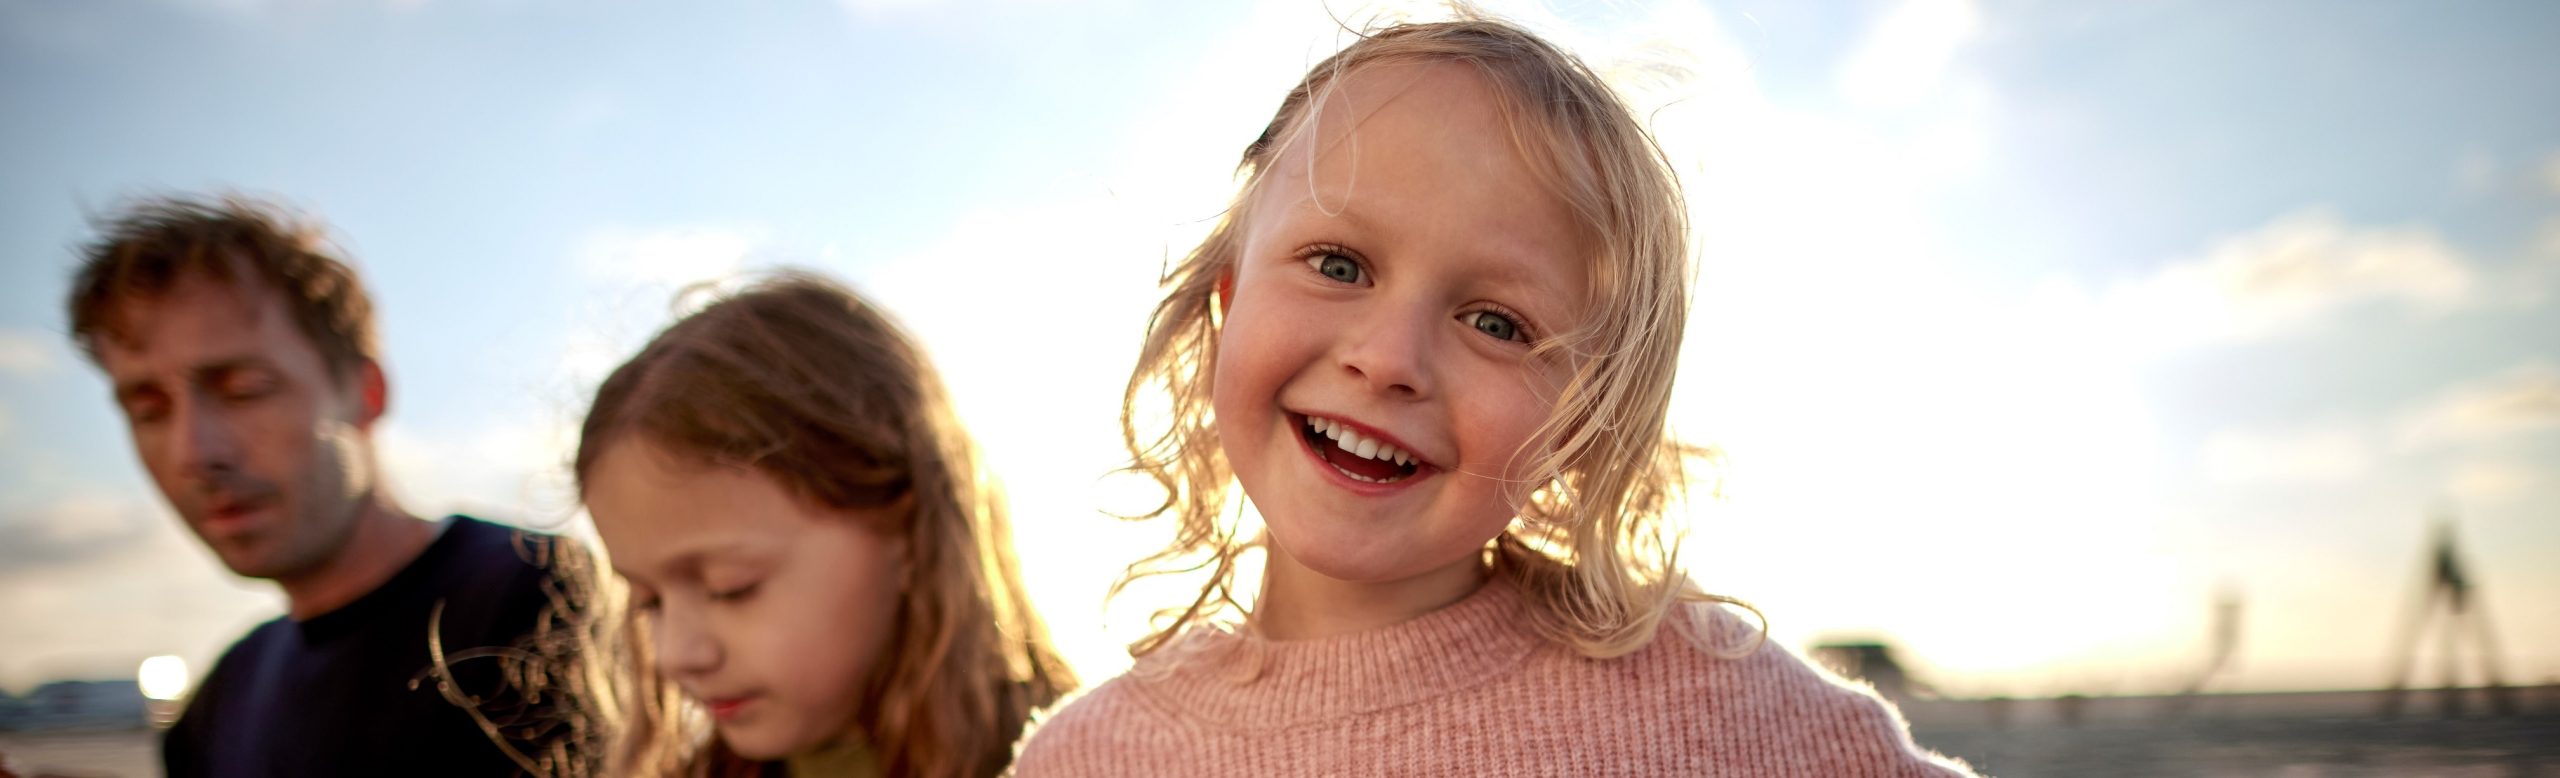 Petite fille heureuse sur une plage avec sa famille